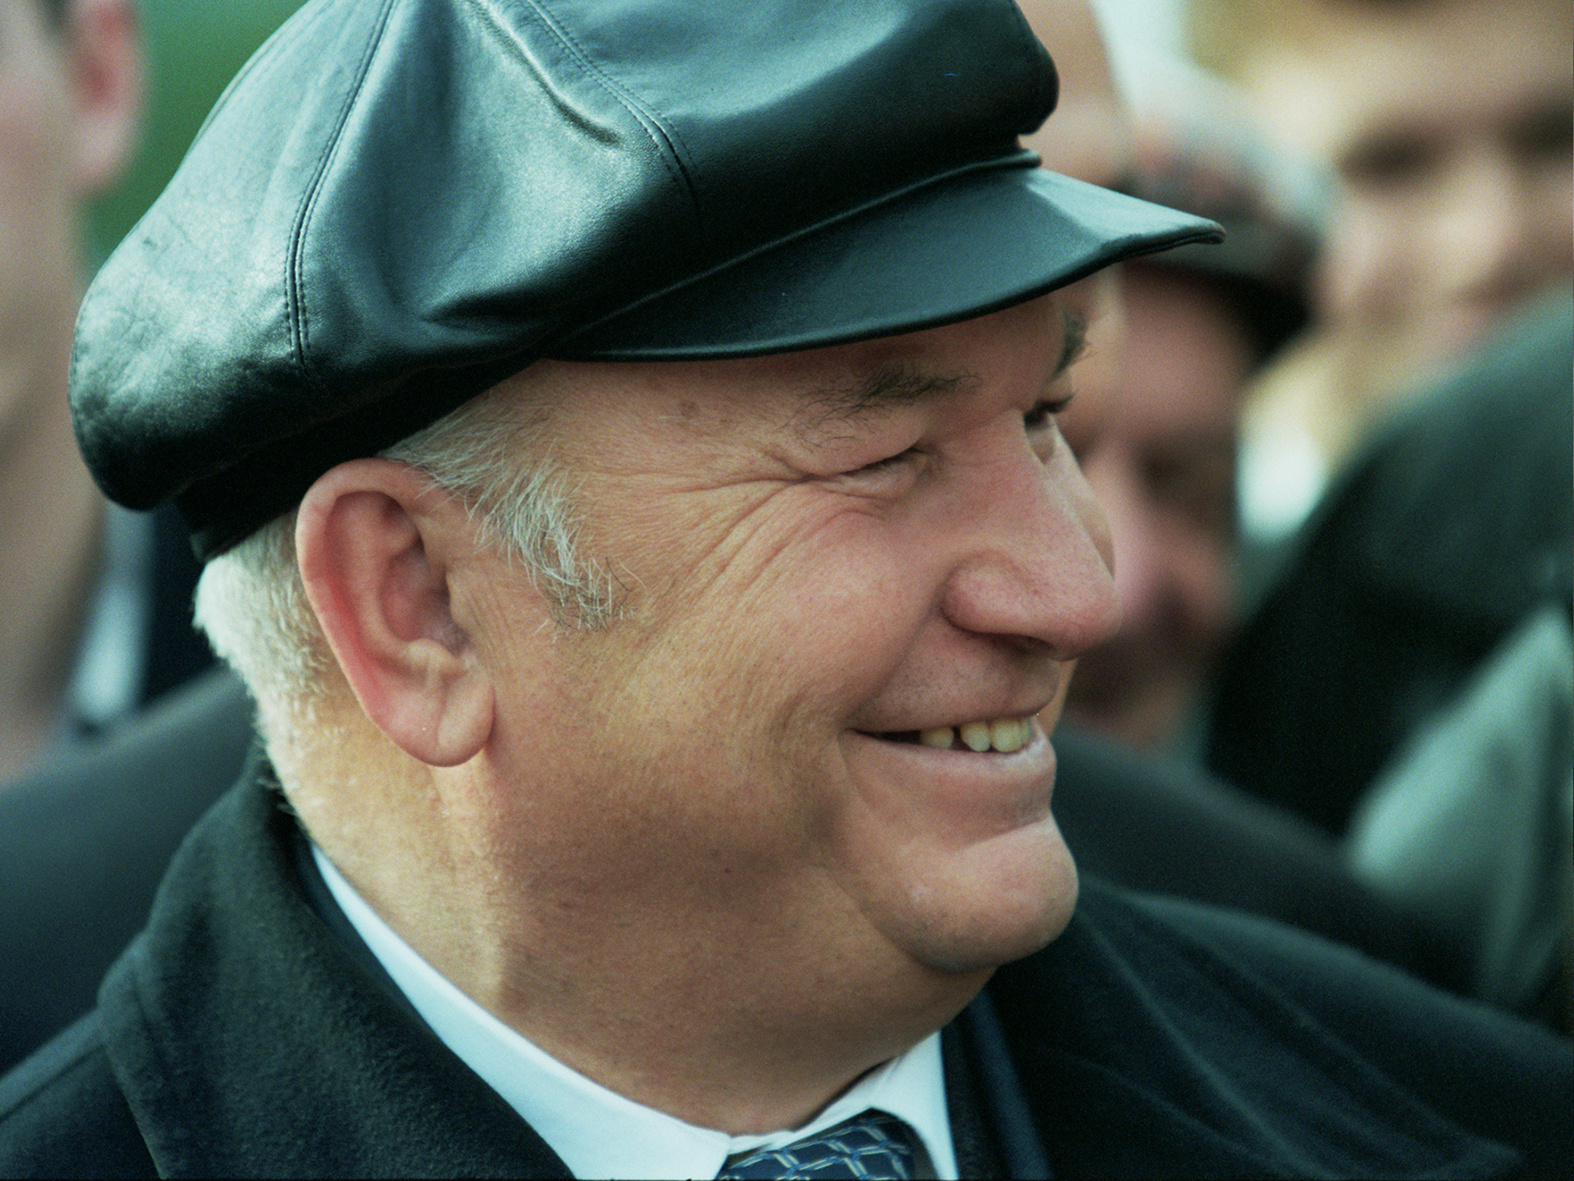 Юрий Лужков — второй мэр Москвы, занимал этот пост с 1992 по 2010 годы